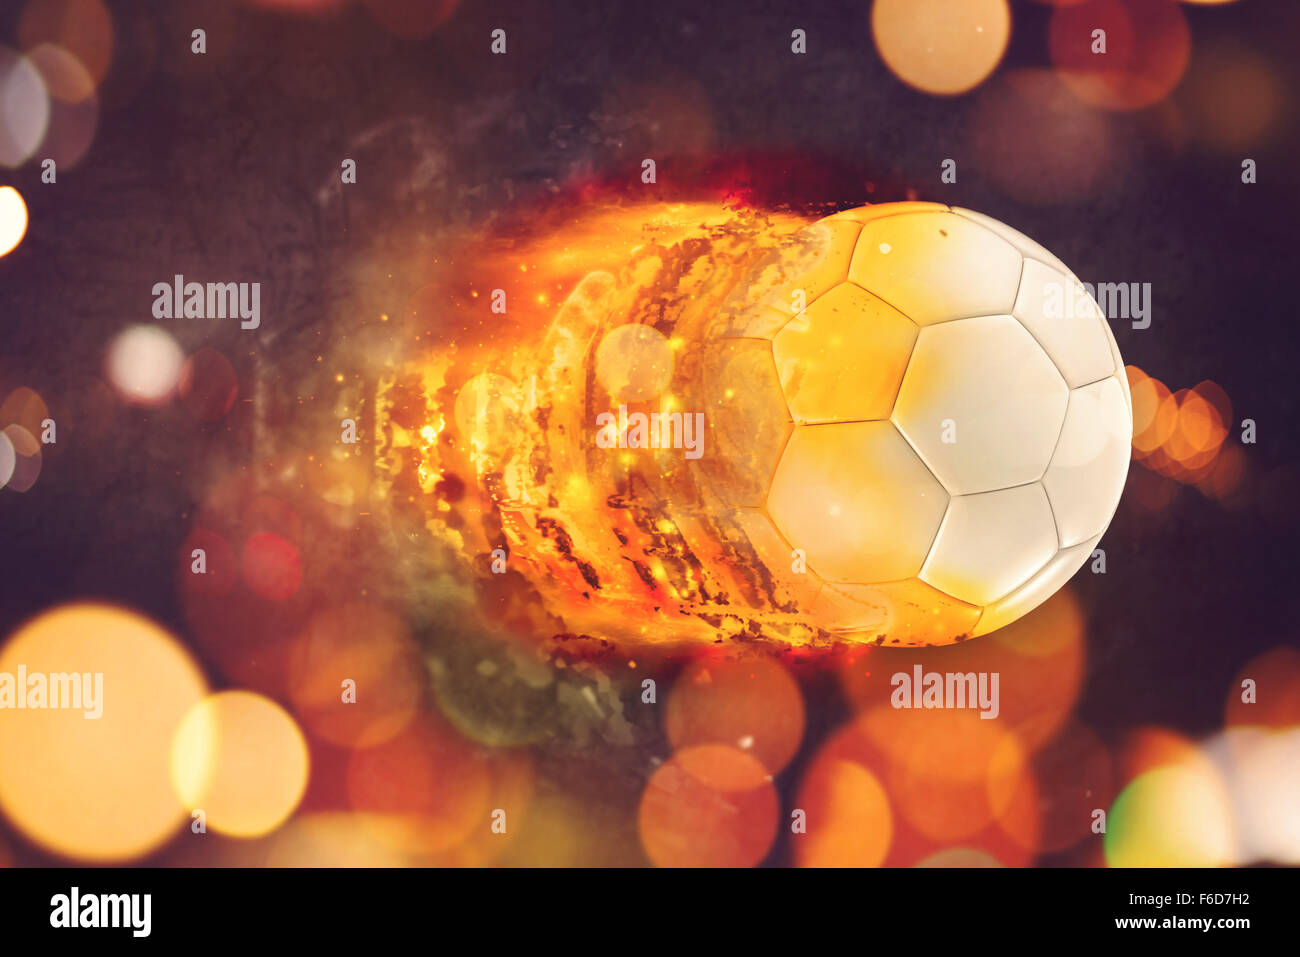 Fußball in Flammen, brennende Penalty Kick Fußball fliegen in Richtung des Ziels. Stockfoto